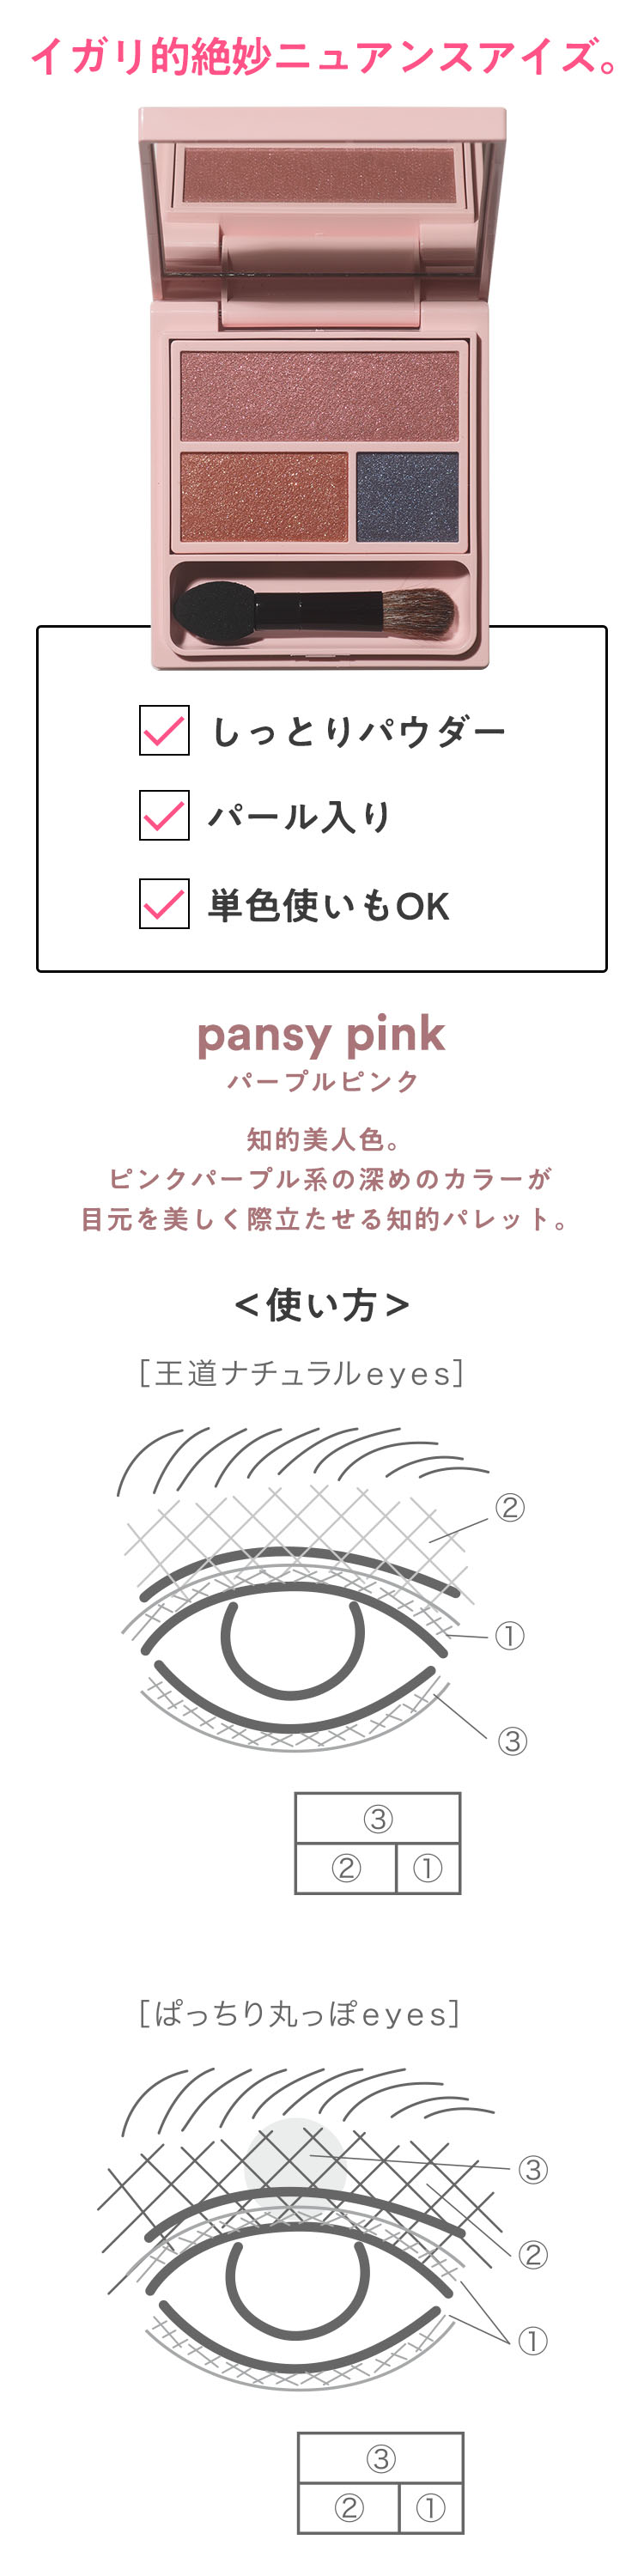 フーミー アイシャドウパレット pansy pink パープルピンク